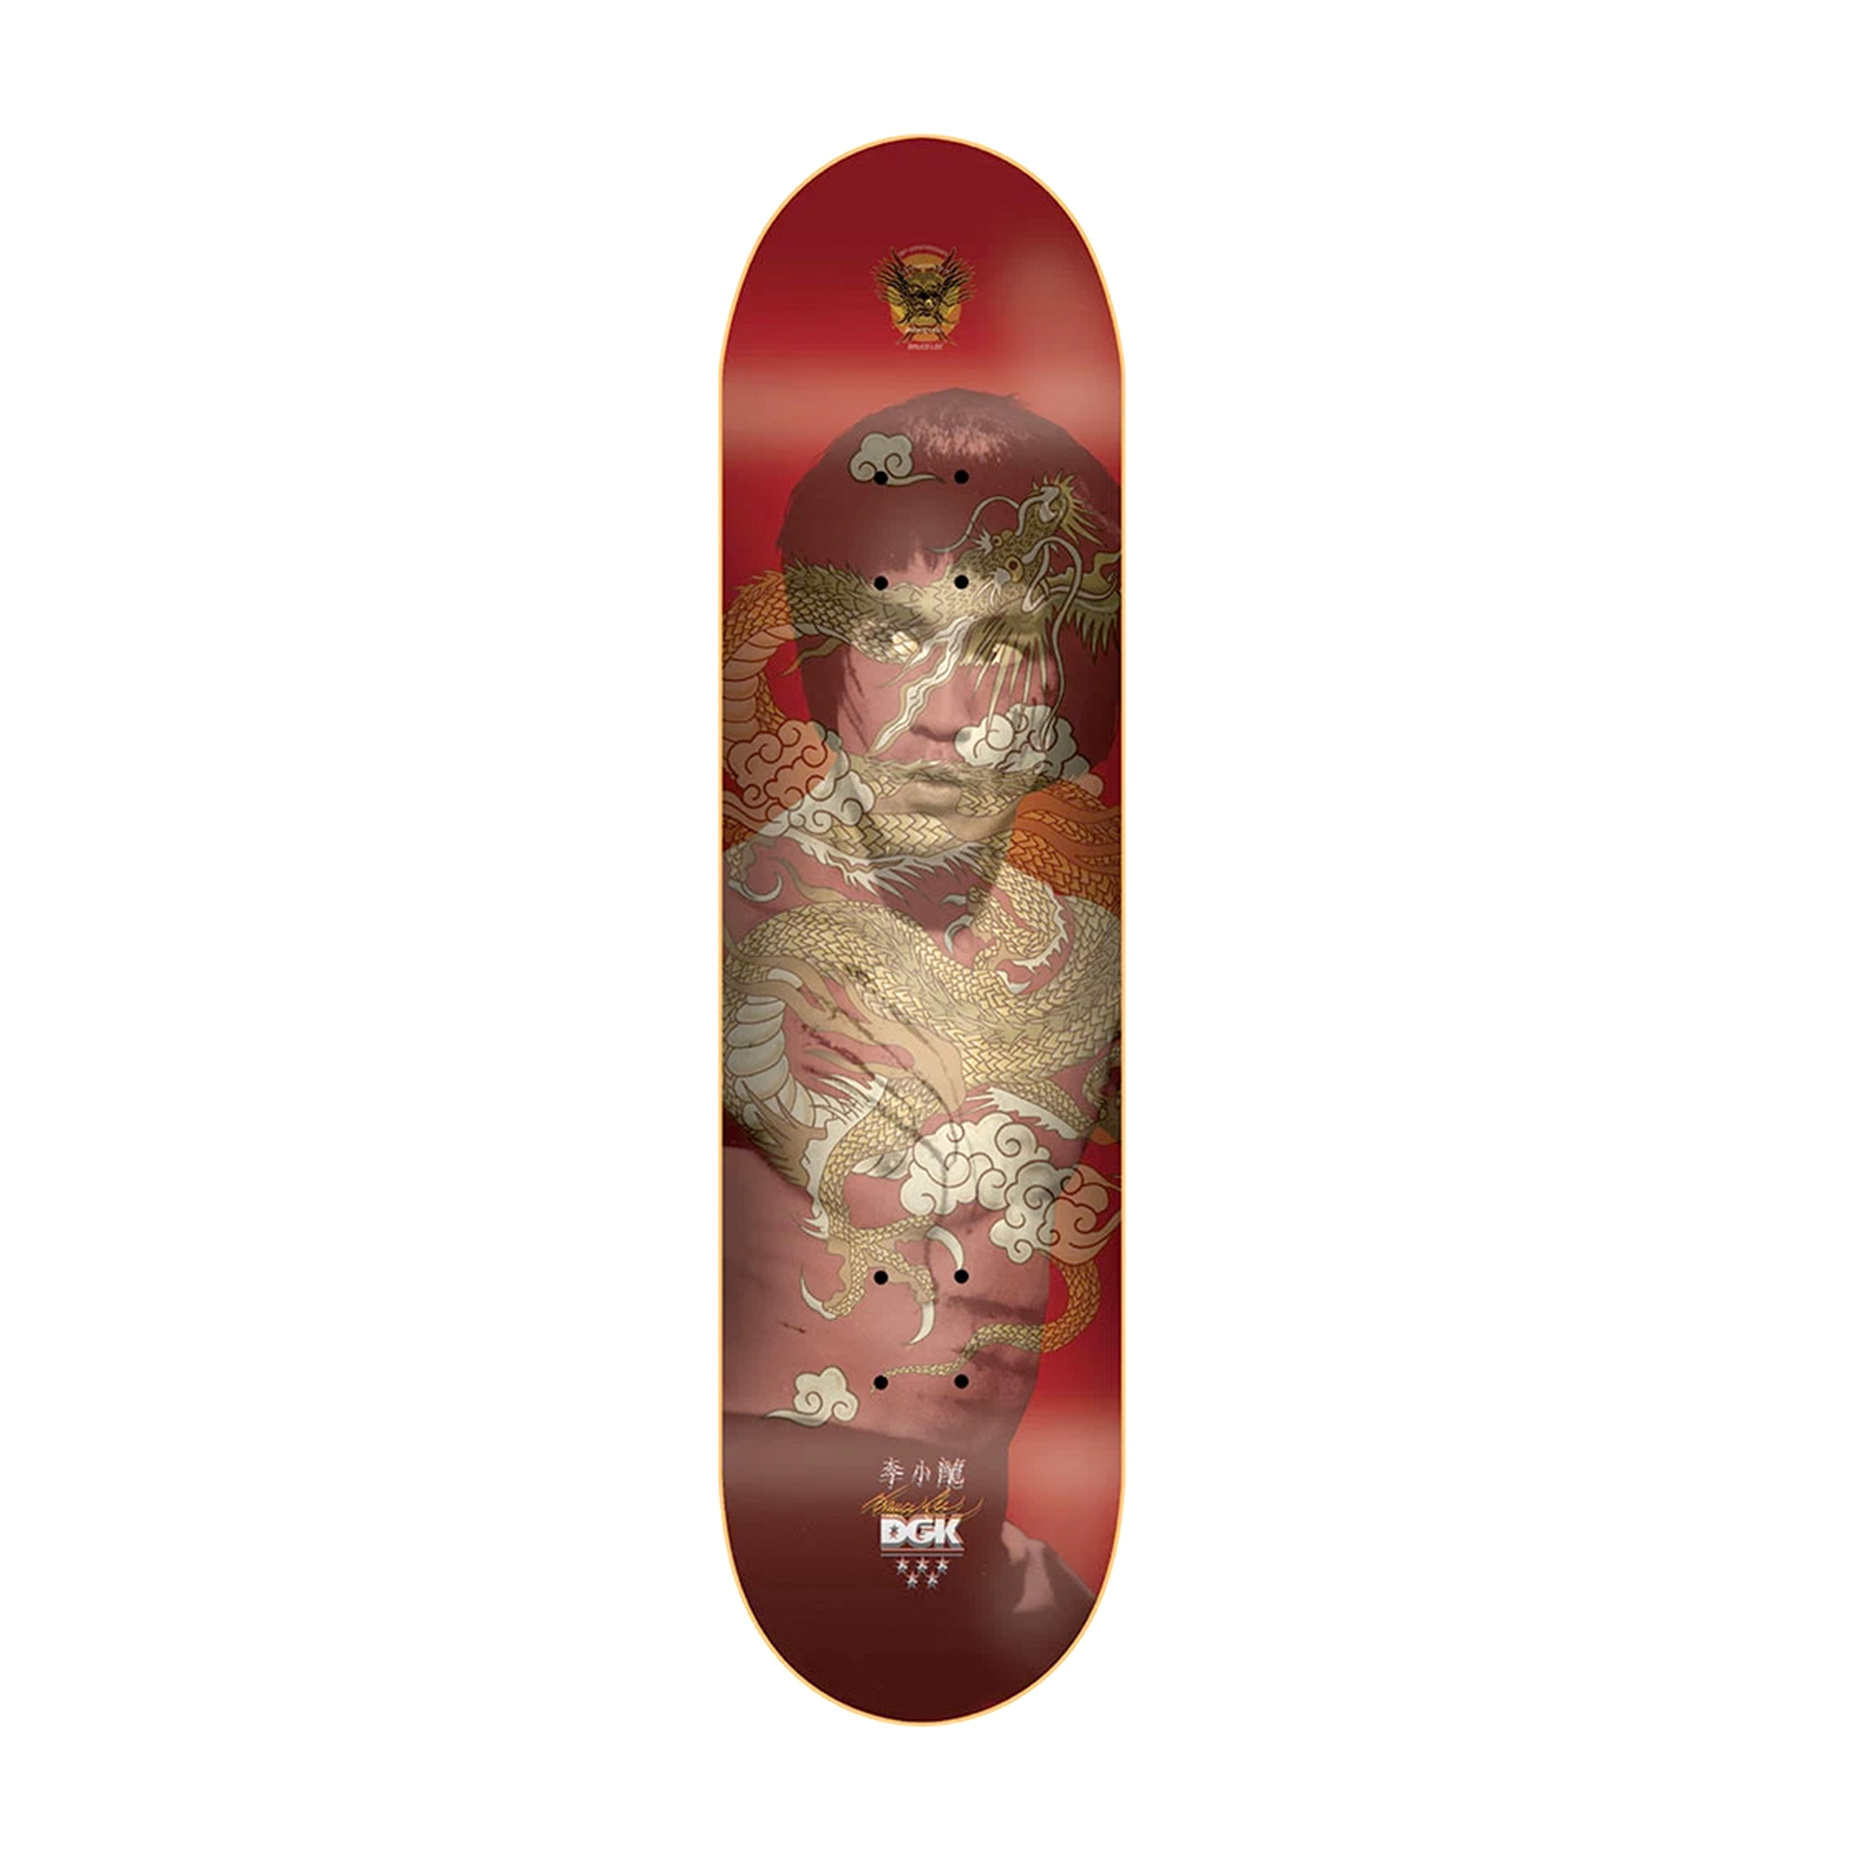 Bruce Lee Holographic Skateboard DGK Golden Dragon Red Lenticular Deck